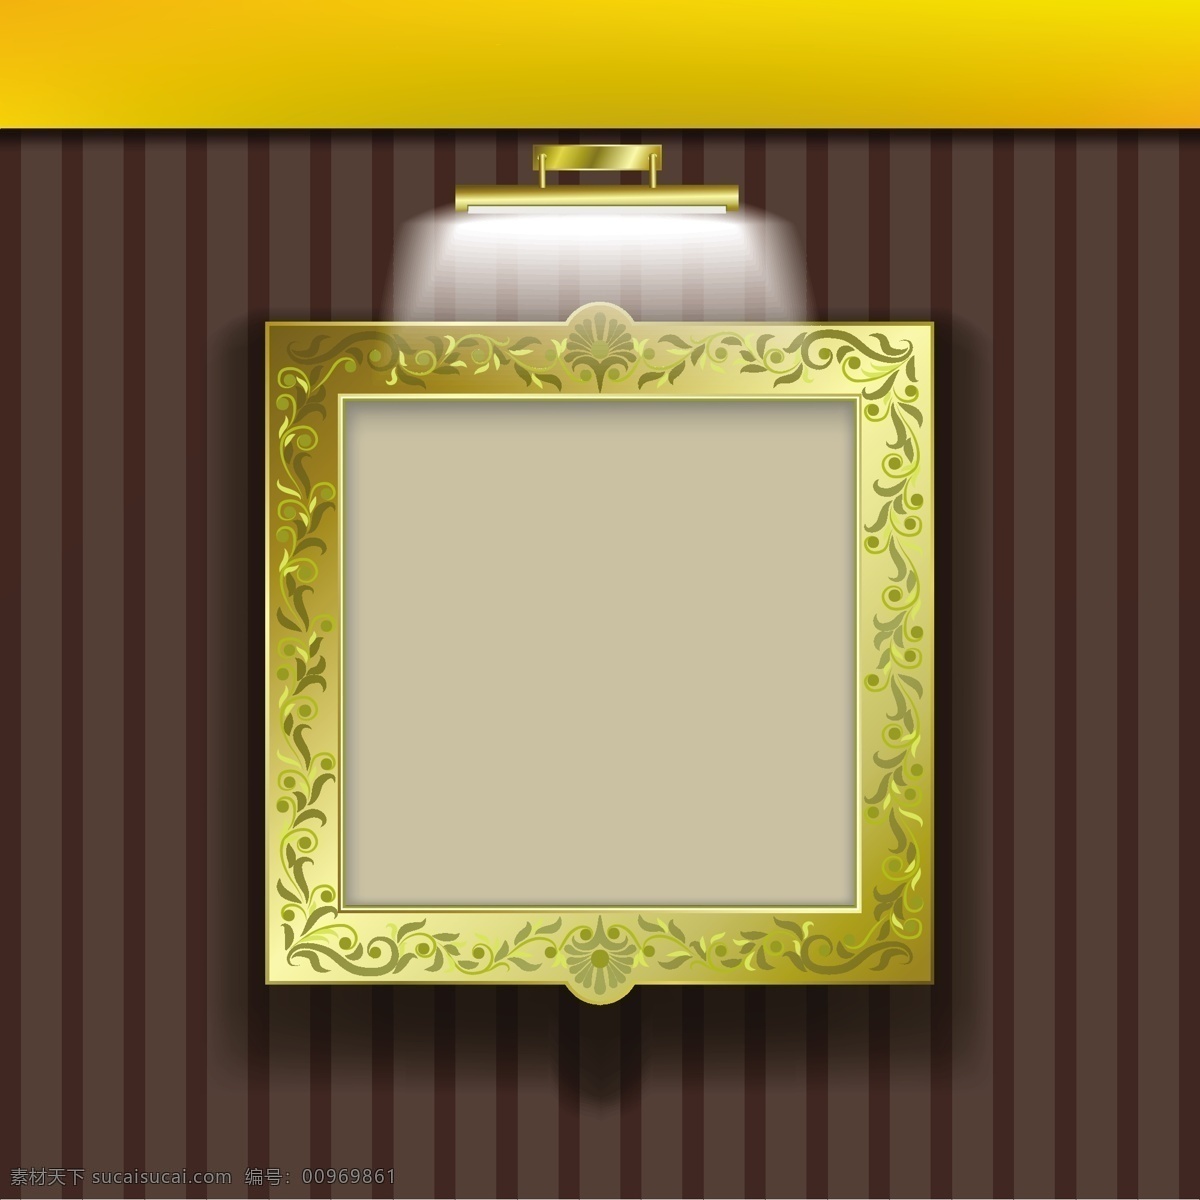 矢量 金色 花纹 边框 相框 背景 壁纸 灯 灯光 经典 矢量素材 家居装饰素材 壁纸墙画壁纸